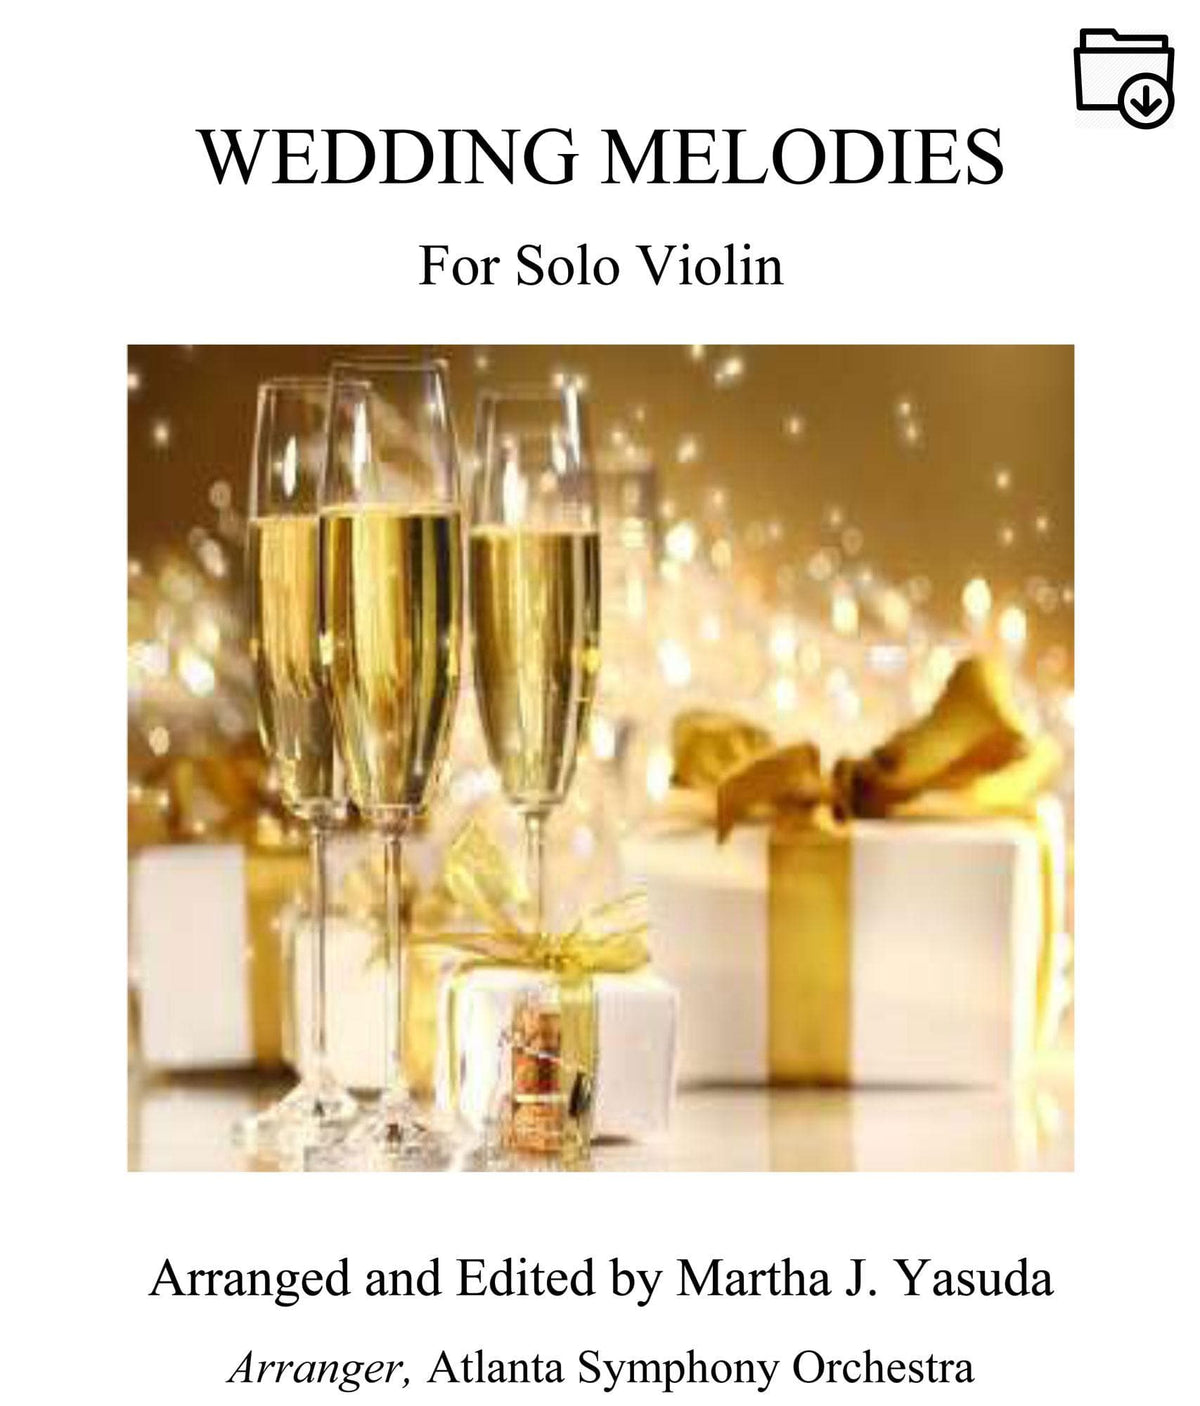 Yasuda, Martha - Wedding Melodies For Solo Violin - Digital Download